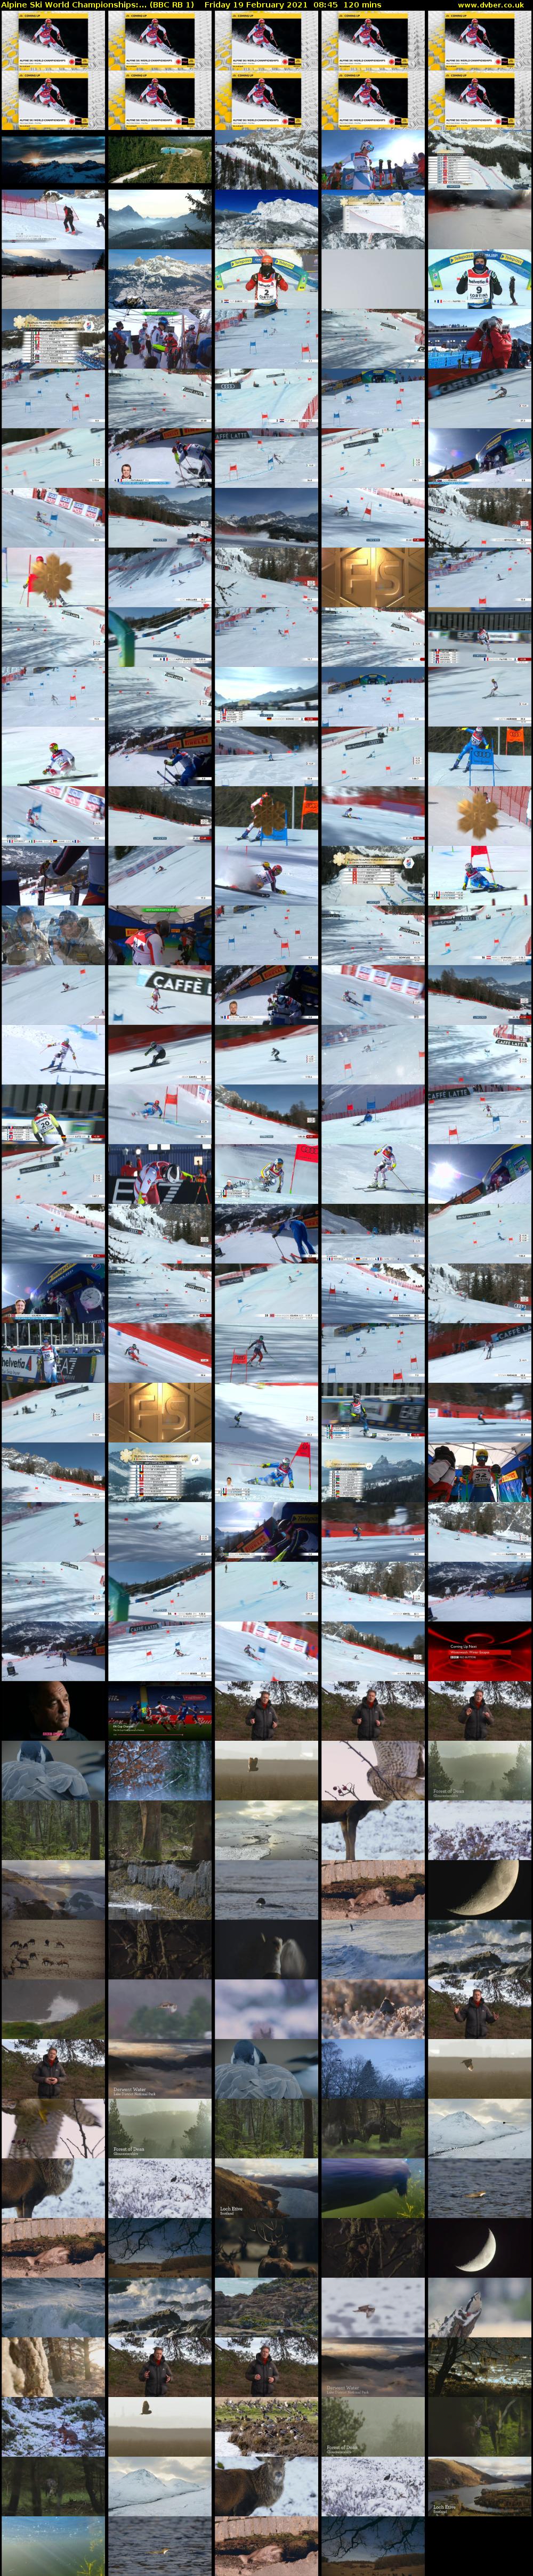 Alpine Ski World Championships:... (BBC RB 1) Friday 19 February 2021 08:45 - 10:45